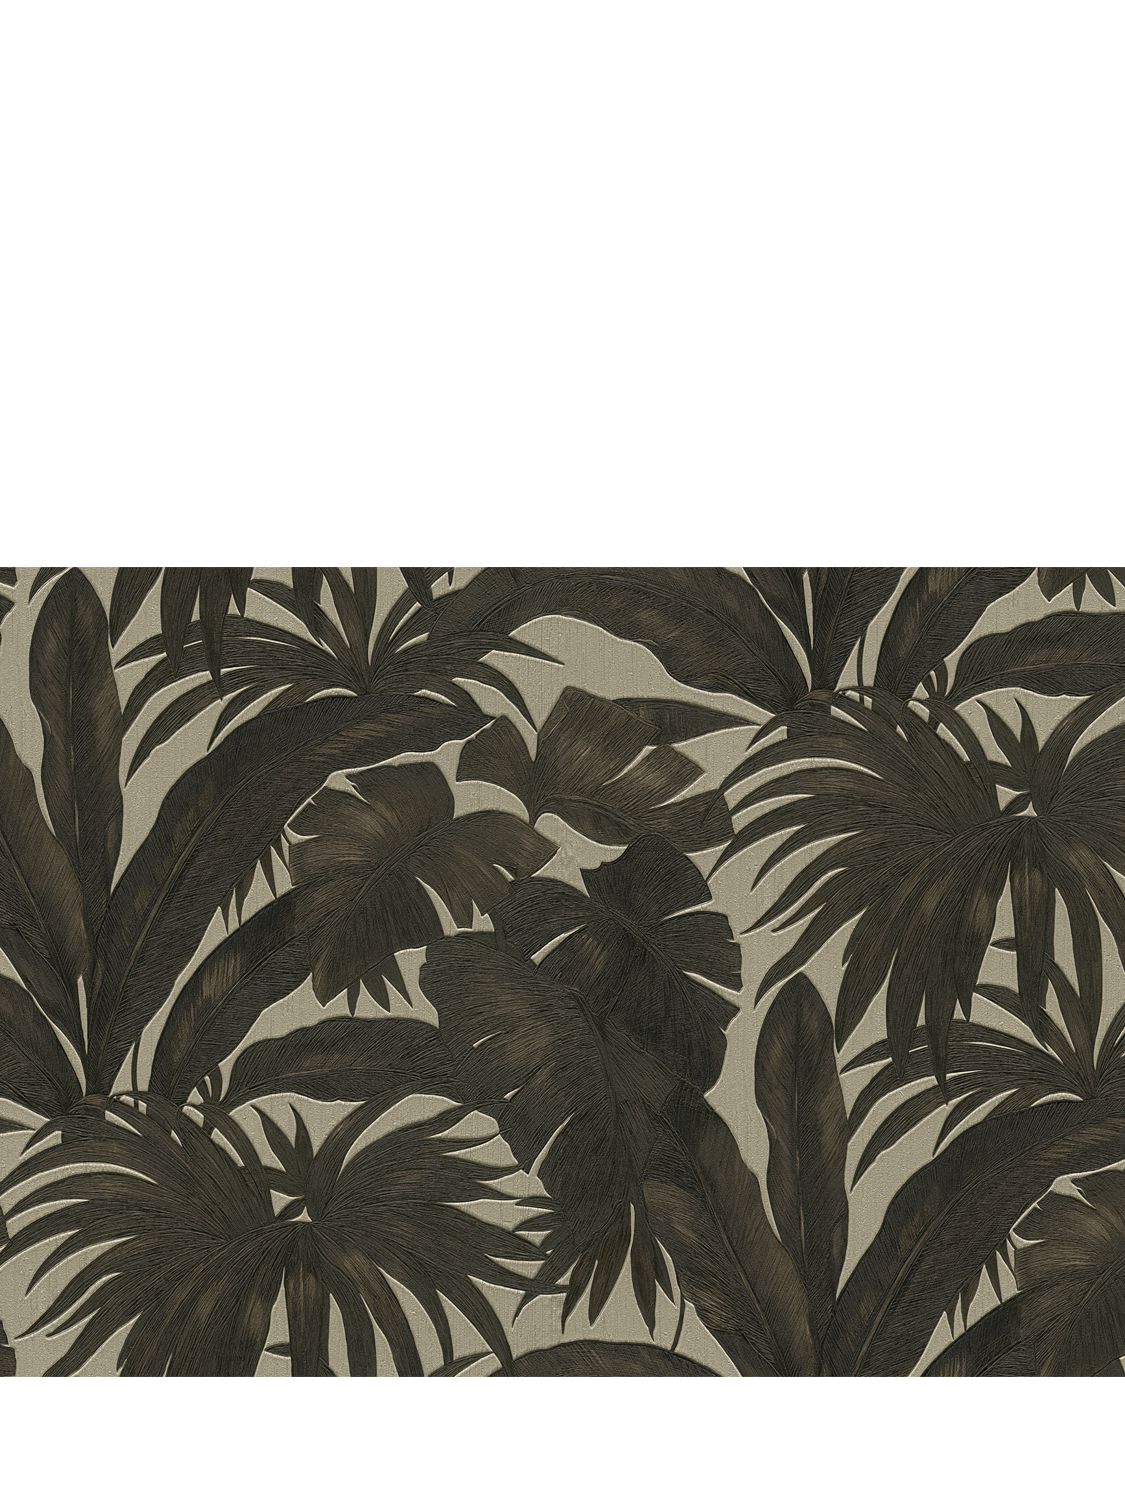 Versace Jungle Printed Wallpaper In Black